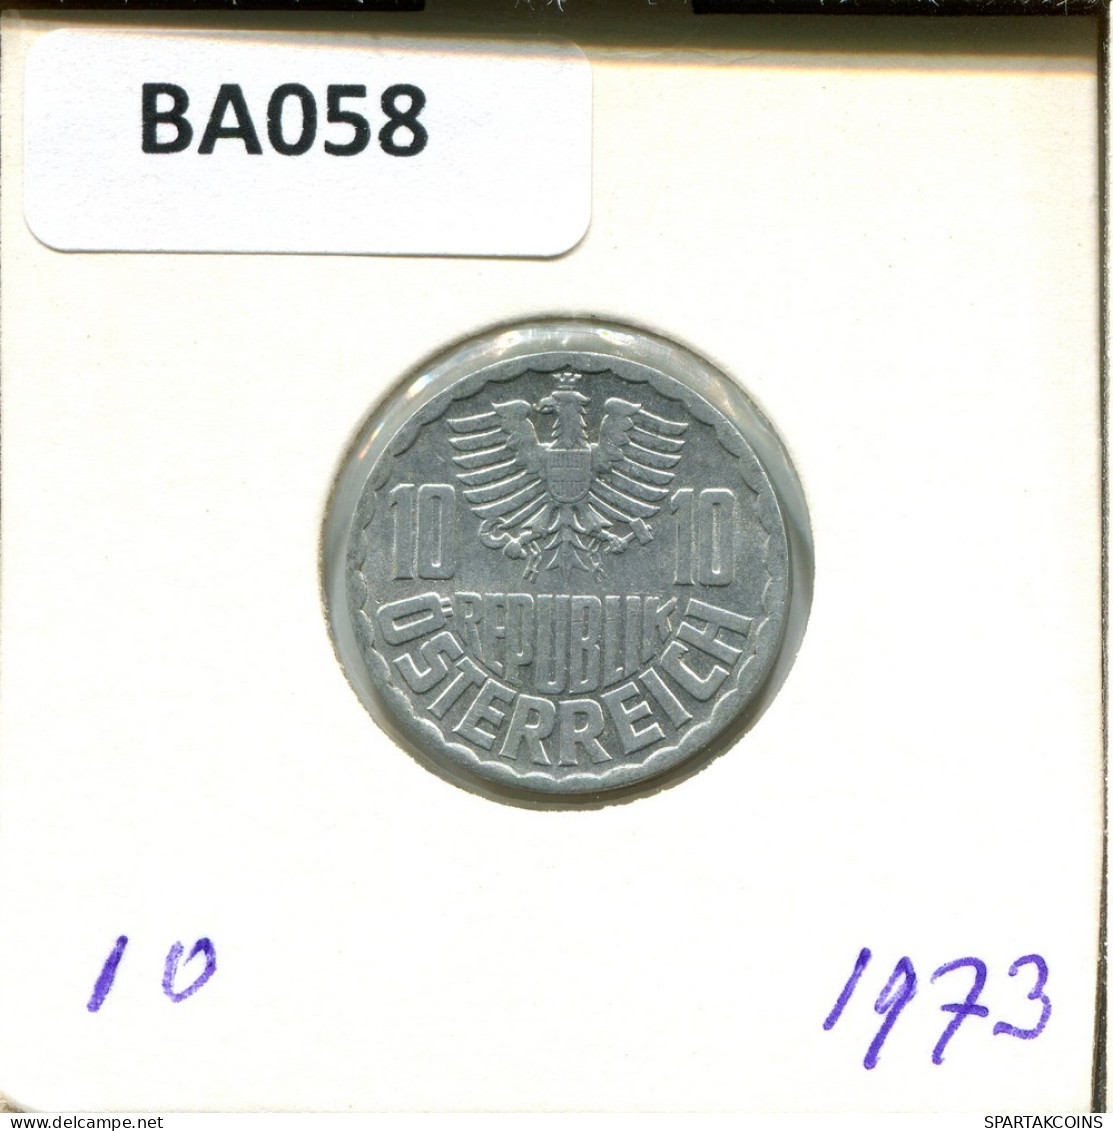 10 GROSCHEN 1973 ÖSTERREICH AUSTRIA Münze #BA058.D.A - Oostenrijk